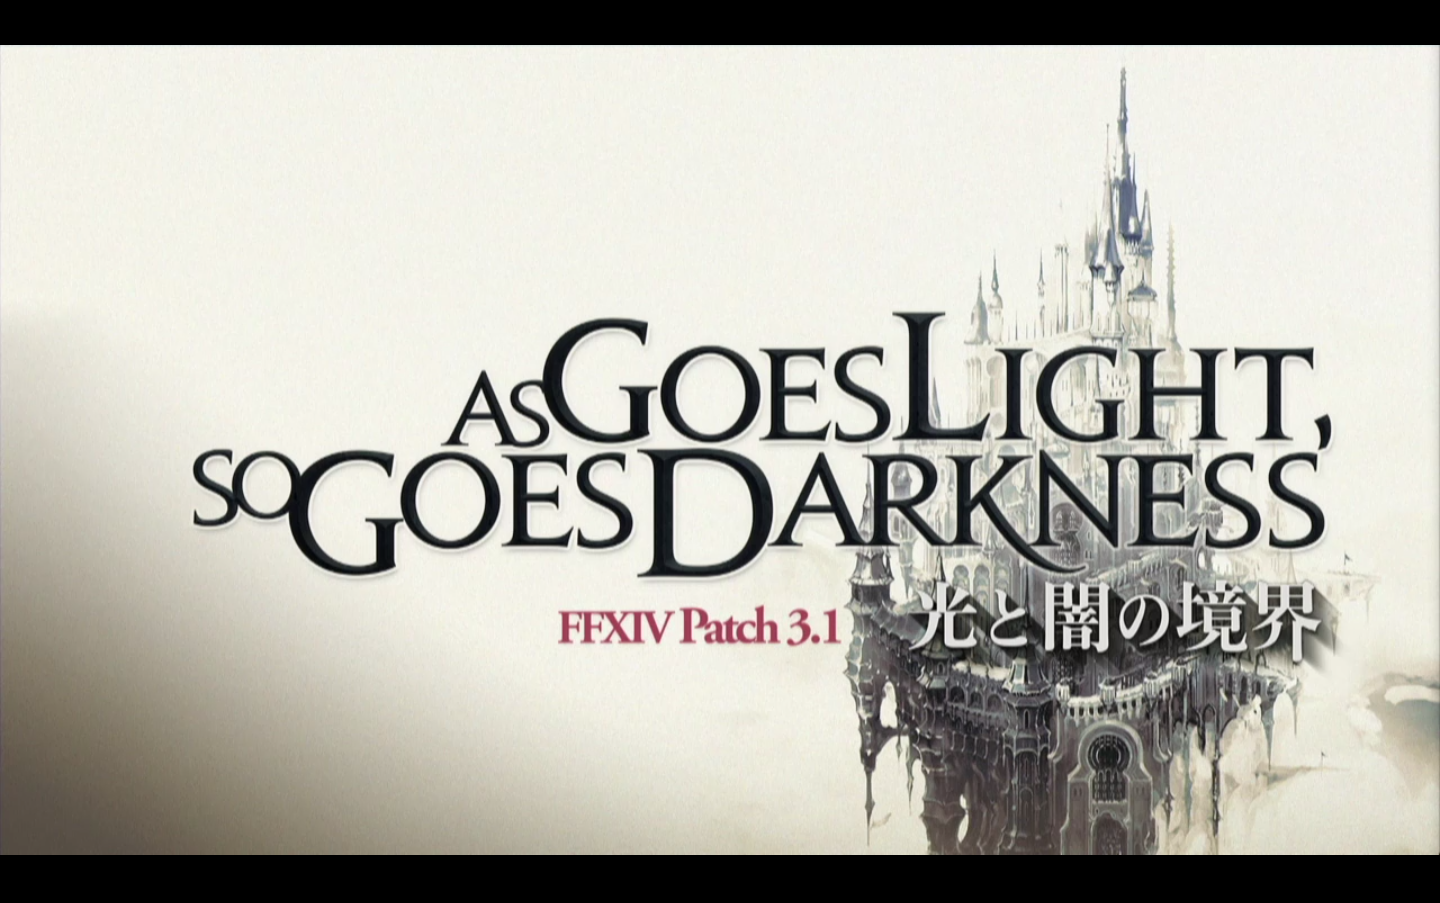 Final Fantasy XIV Patch 3.1 Title